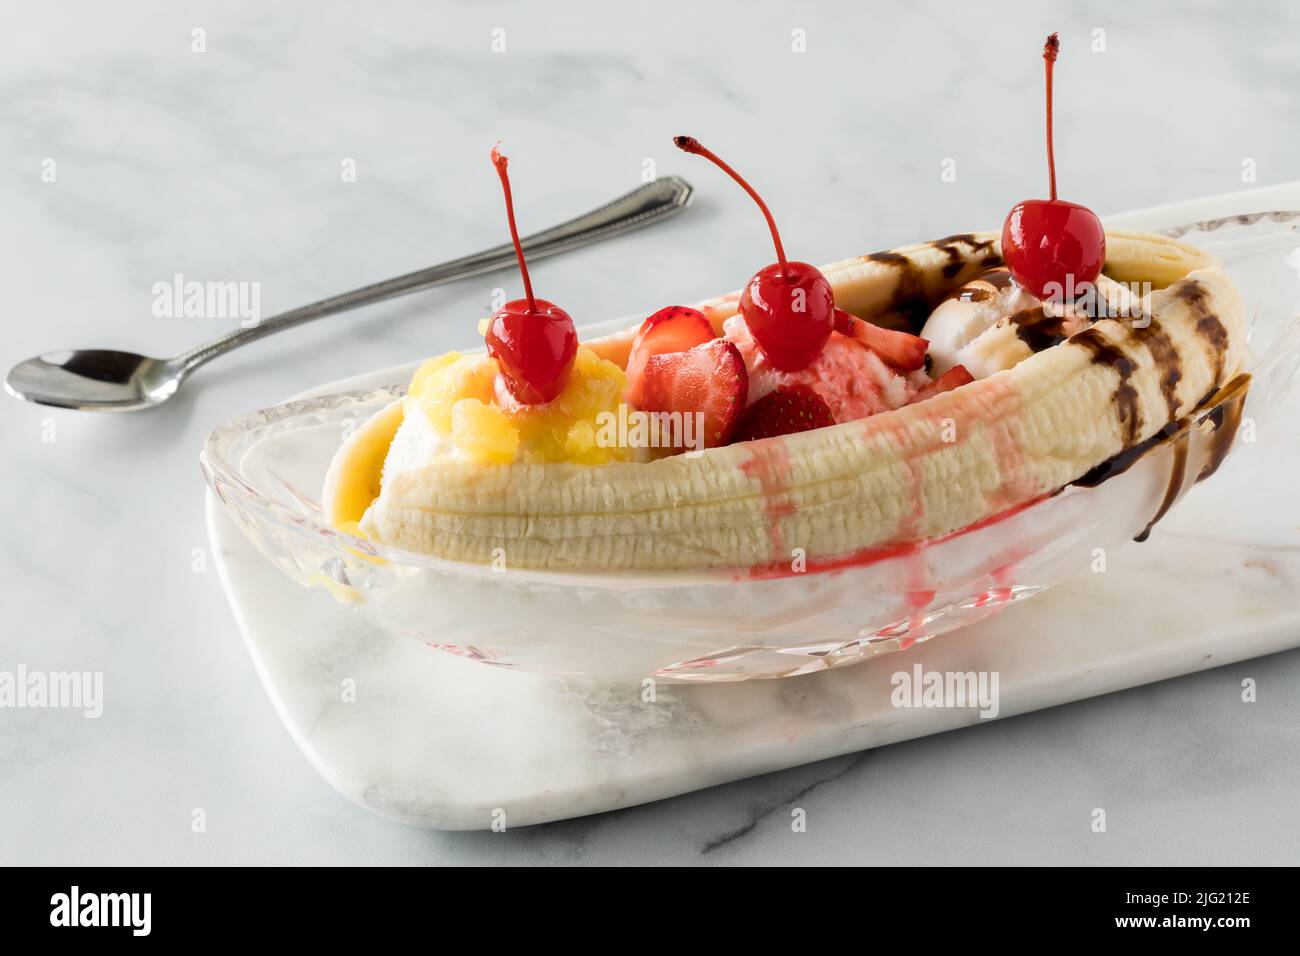 Banana split ice cream dessert topped with maraschino cherries. Stock Photo